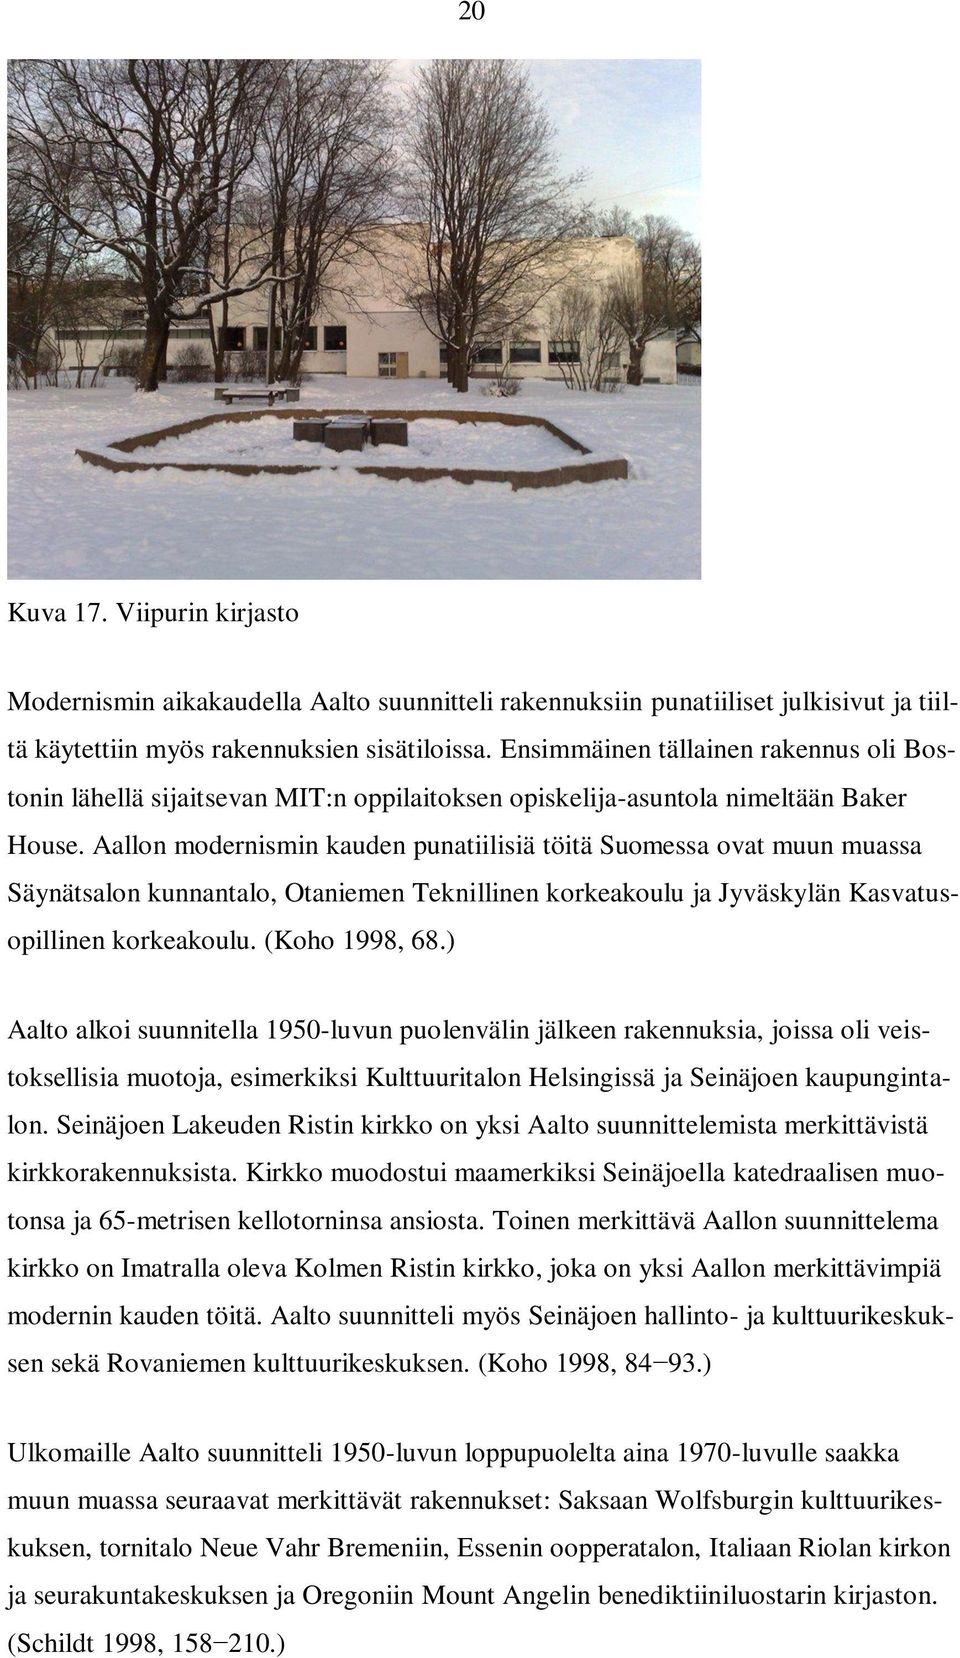 Aallon modernismin kauden punatiilisiä töitä Suomessa ovat muun muassa Säynätsalon kunnantalo, Otaniemen Teknillinen korkeakoulu ja Jyväskylän Kasvatusopillinen korkeakoulu. (Koho 1998, 68.